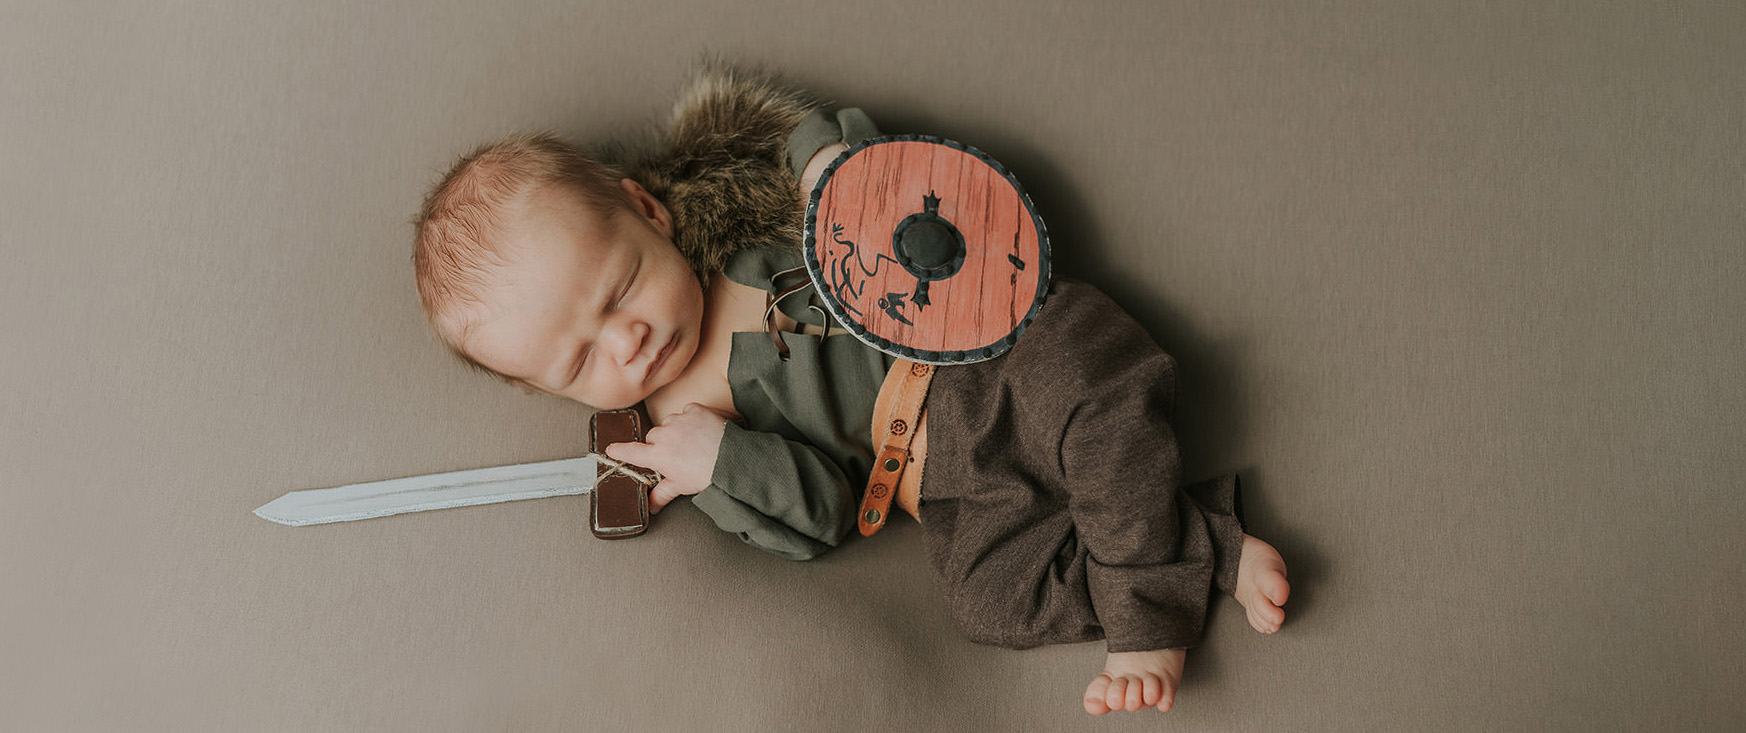 Viking theme newborn photoshoot Norway photographer TS Foto Design